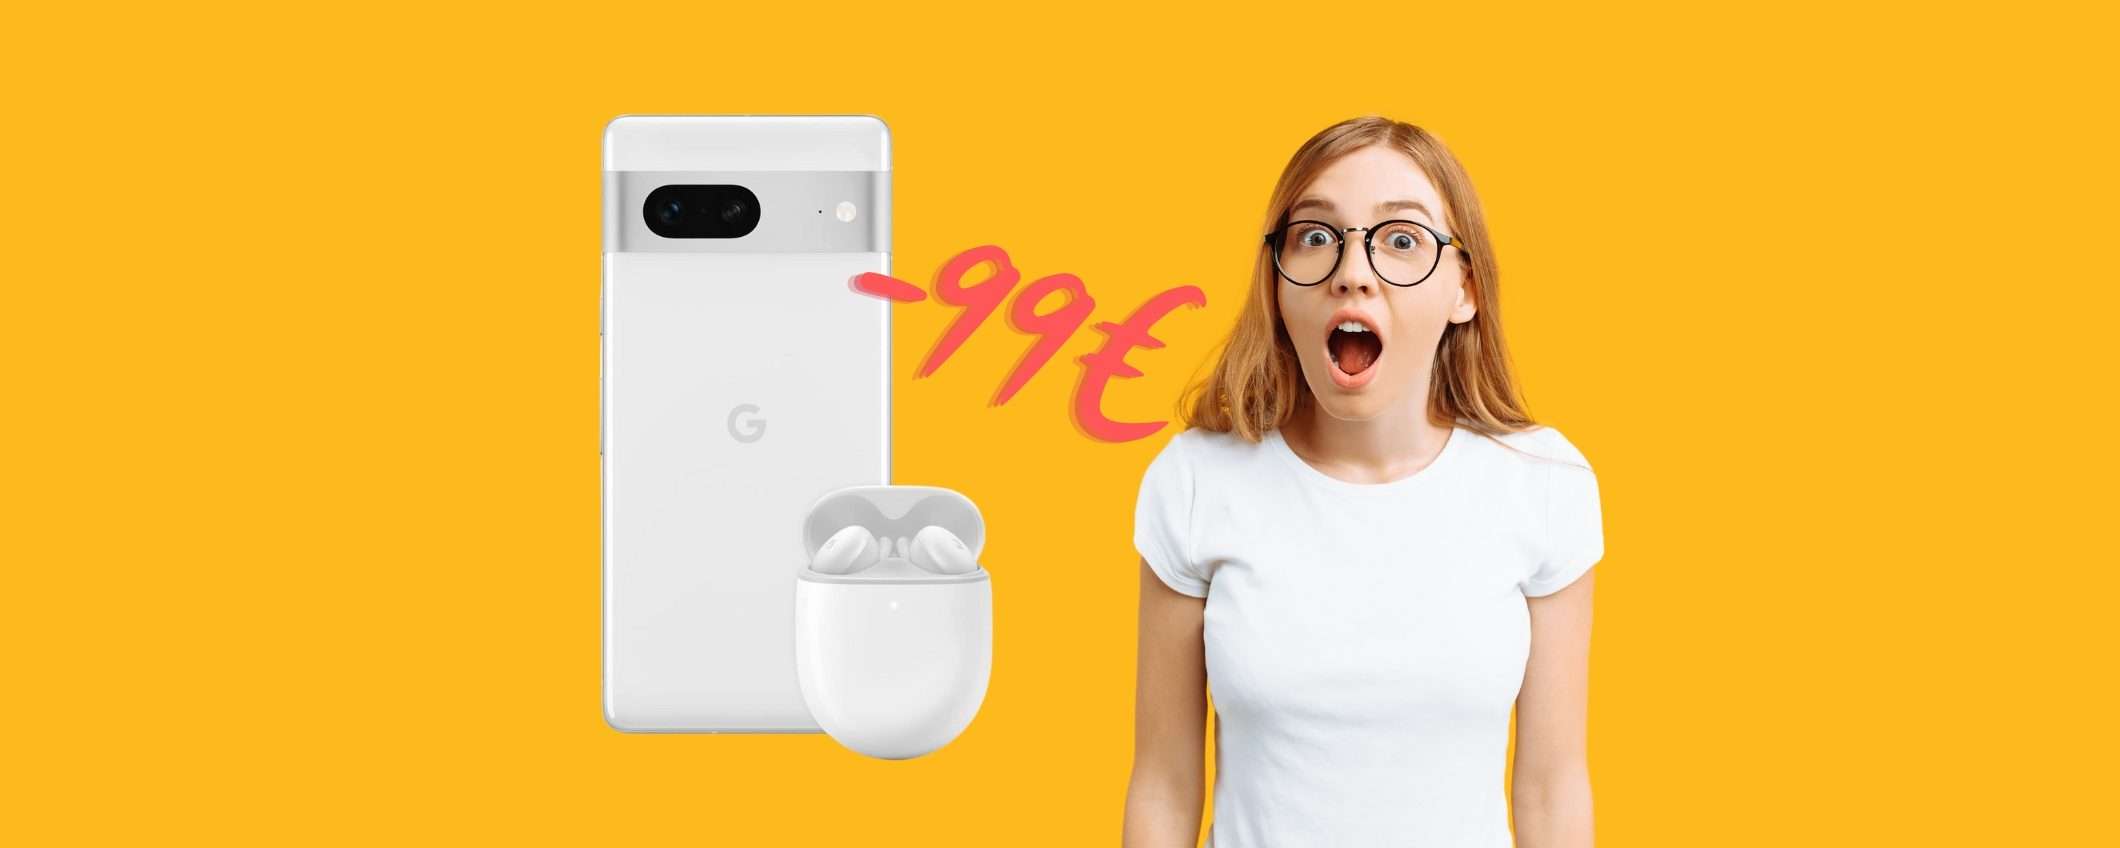 Google Pixel 7 a 99€ in MENO e in REGALO gli auricolari Pixel Buds A